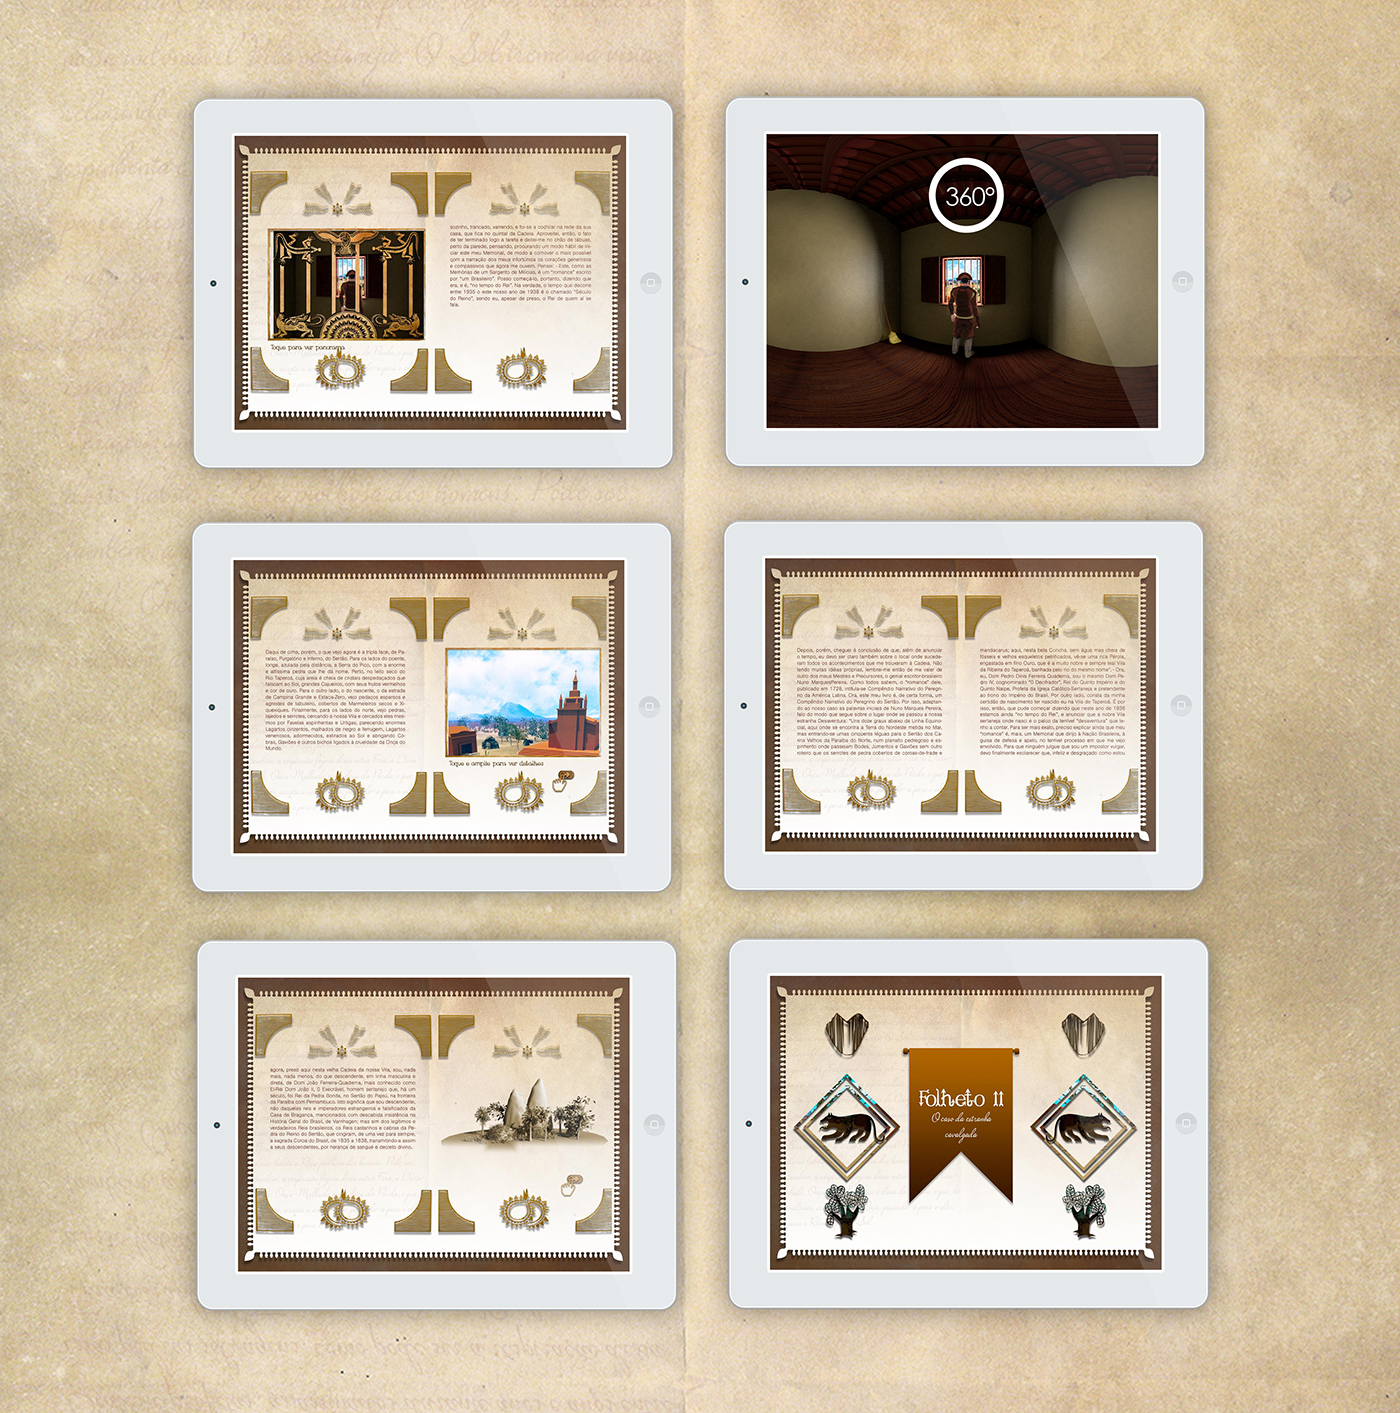 suassuna ariano a pedra do reino interação Livro digital InDesign 360° iPad